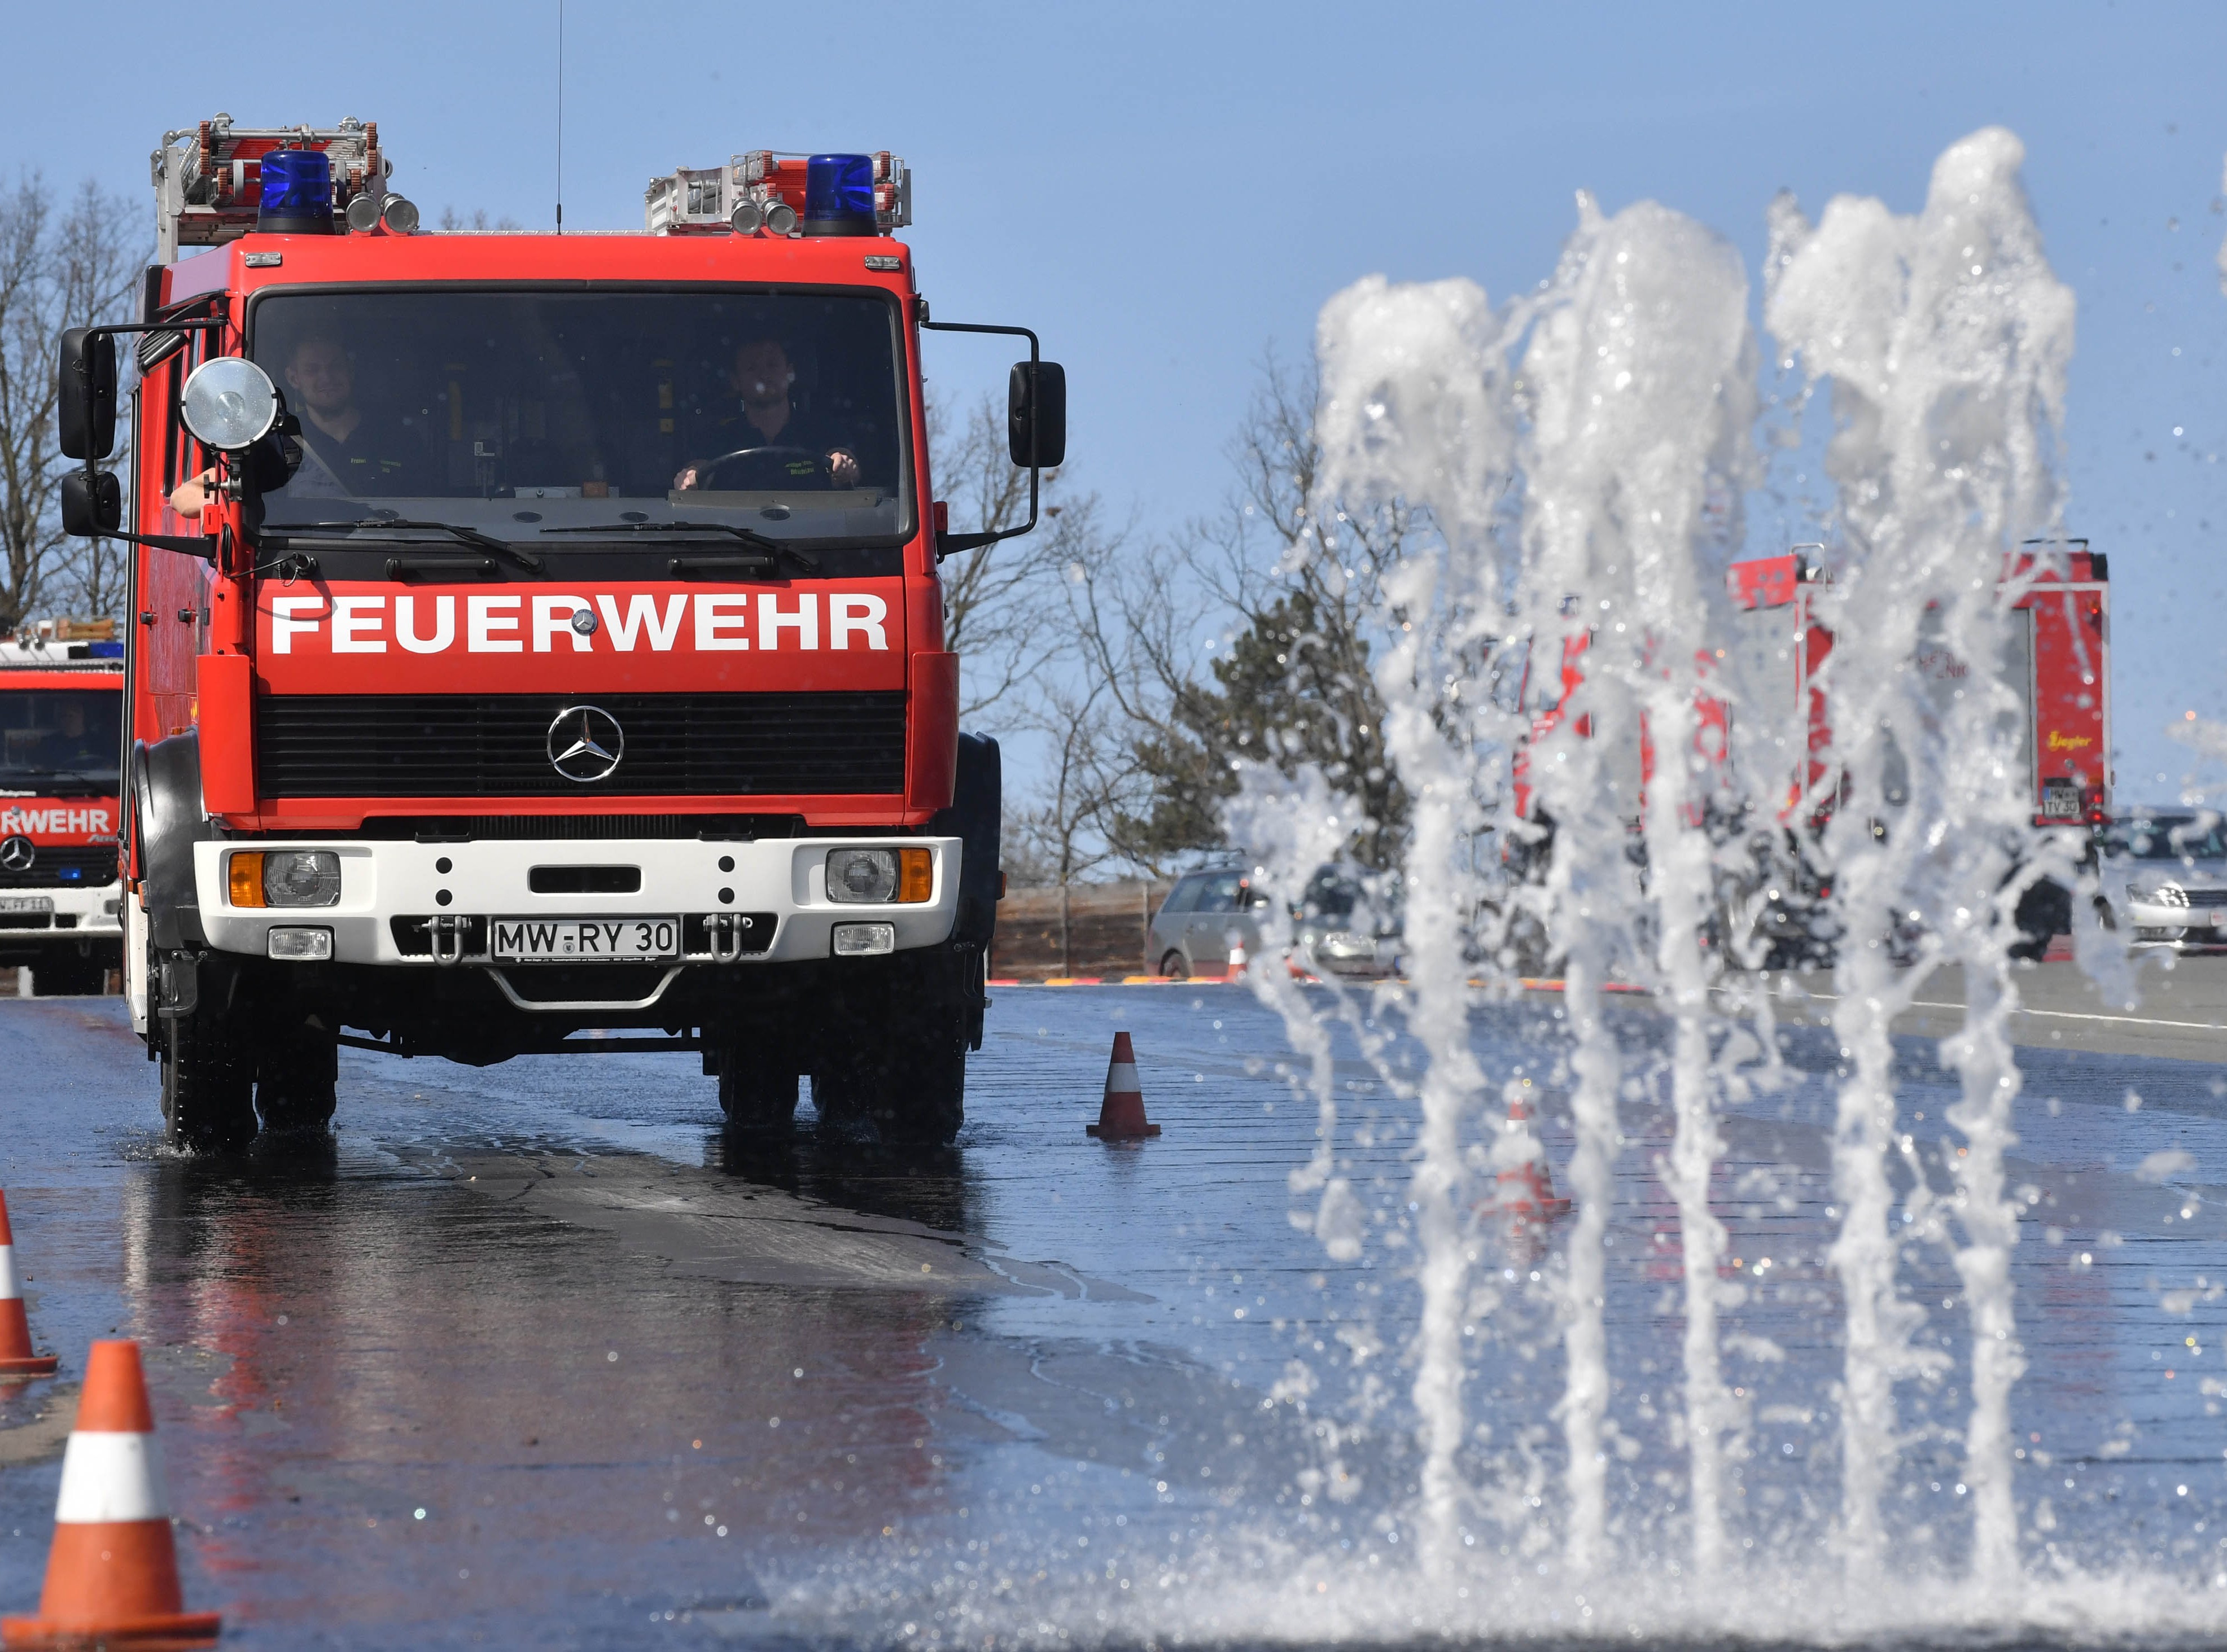 Feuerwehrtruck bei Bremsübungen auf nassem Boden